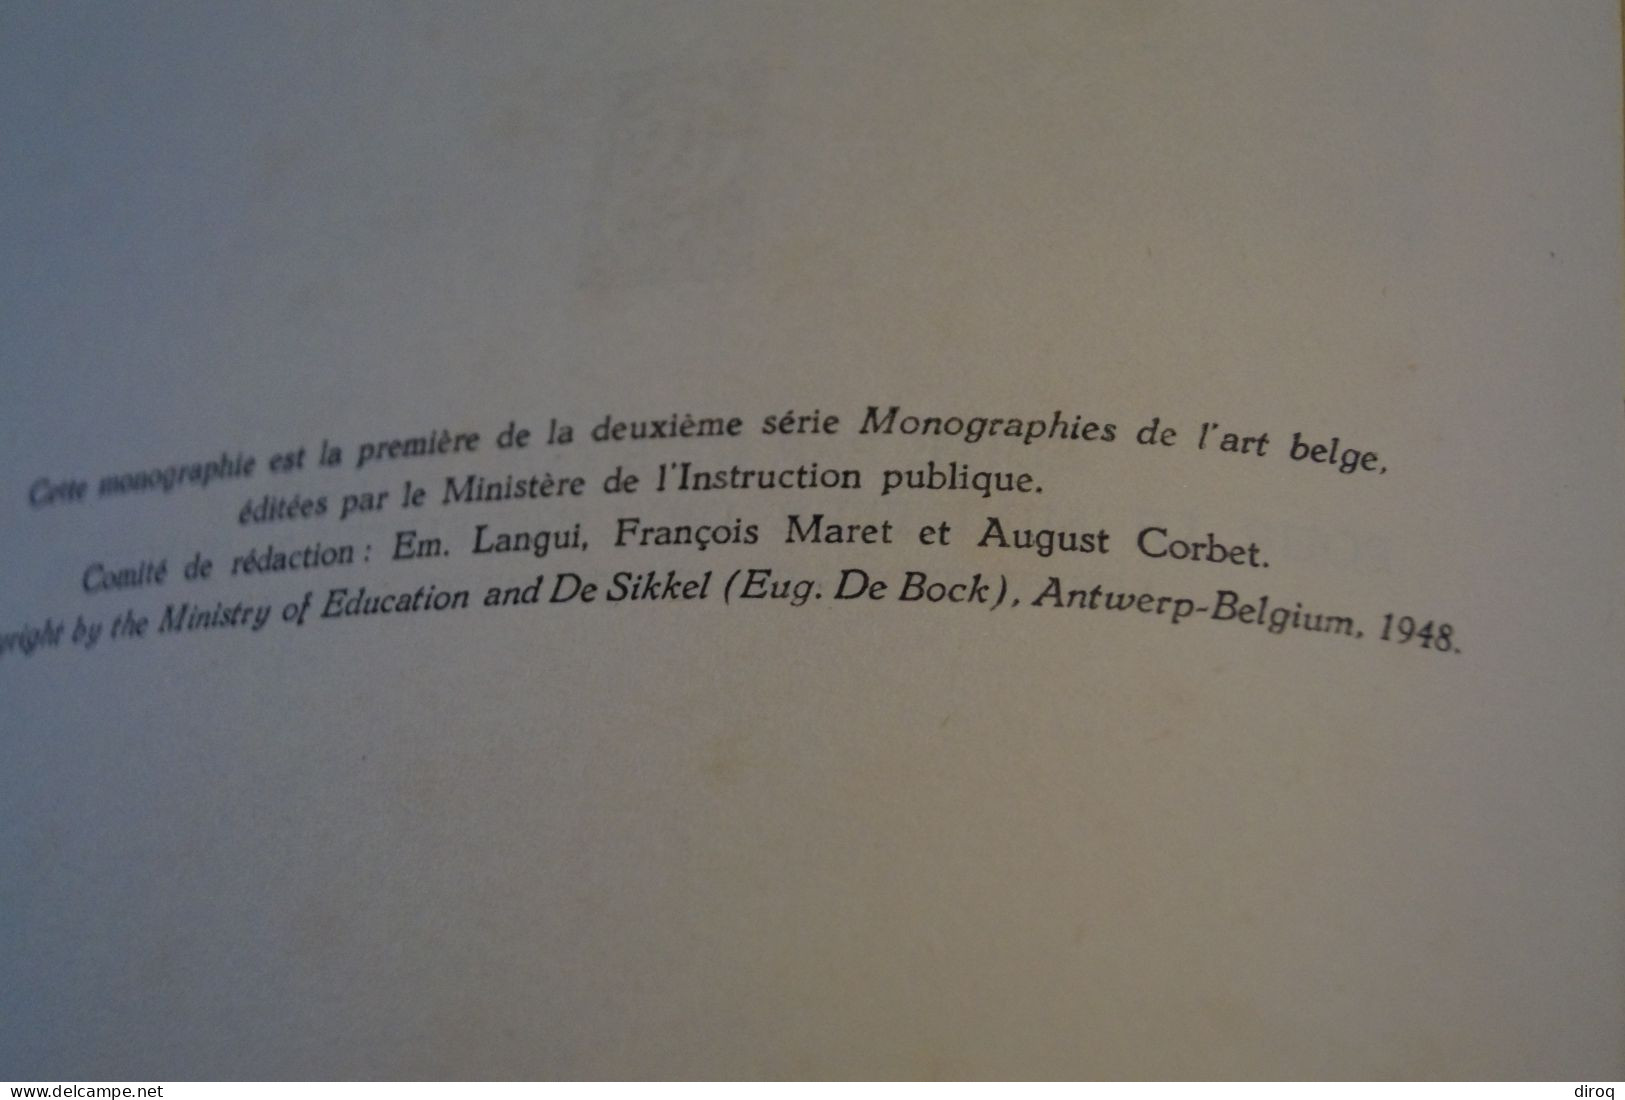 Pierre Paulus,dédicacé,1948 par Louis Pierrard,39 pages,25 Cm. sur 19 Cm.très bel état